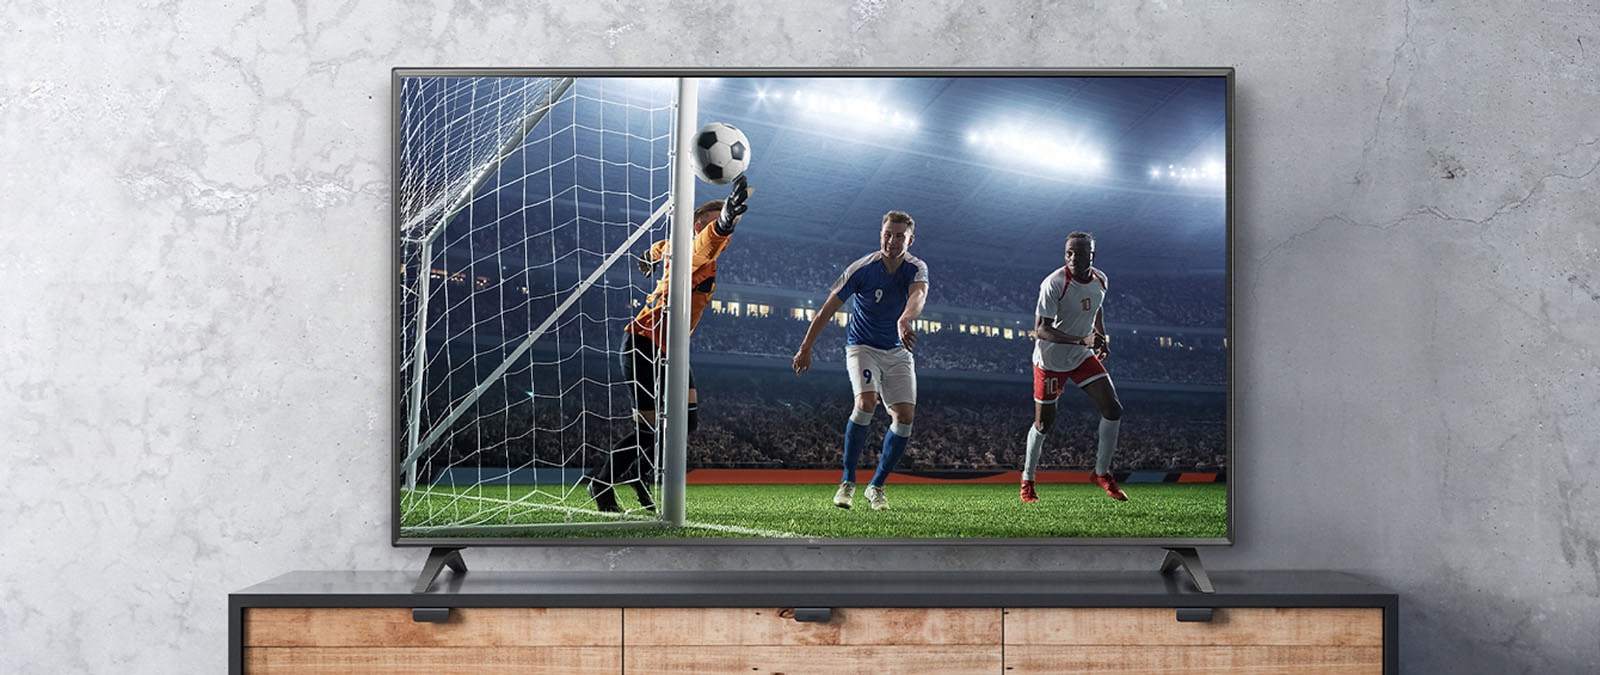 Cảnh trận đấu bóng đá được hiển thị trên màn hình TV trông như thật.